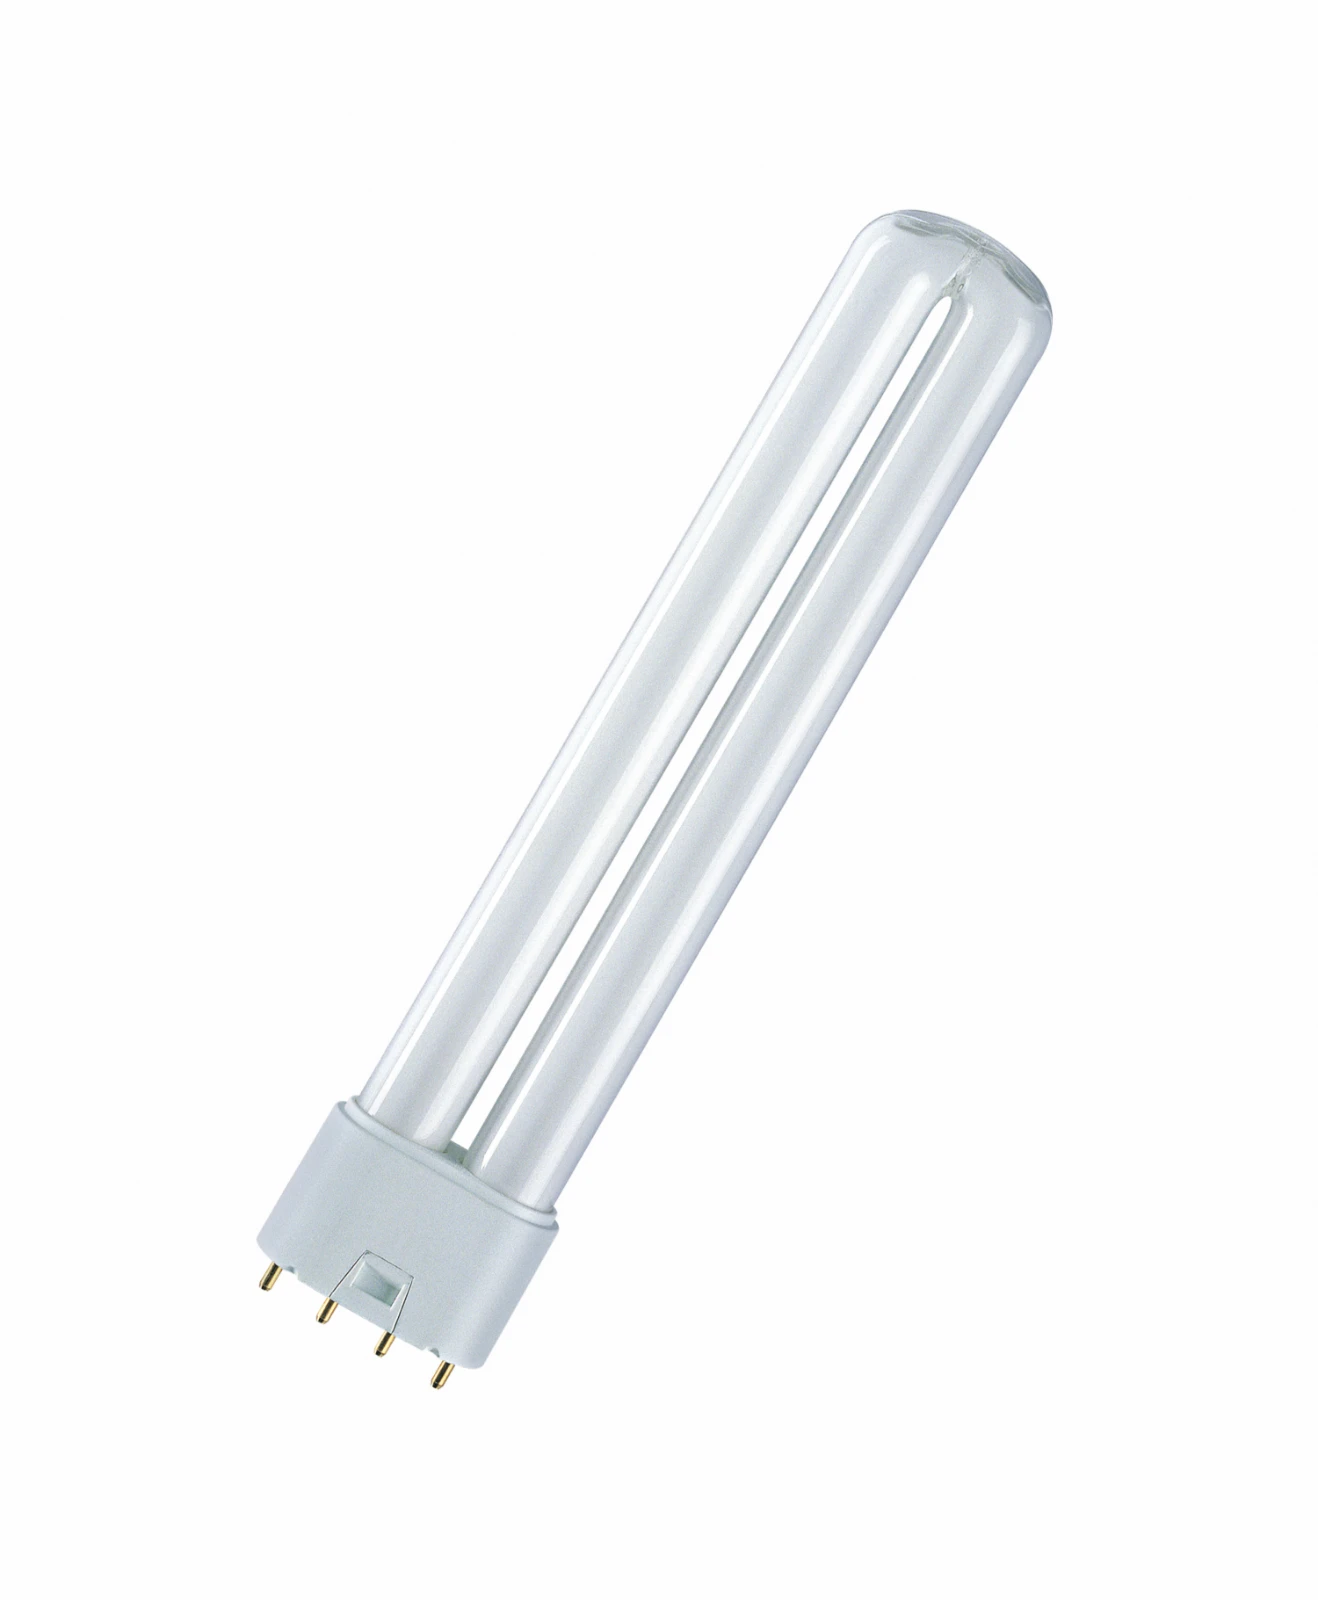 Osram Compact fluorescentielamp zonder geïntegreerd voorschakelapparaat DULUX L 55W/840 2G11 FS1